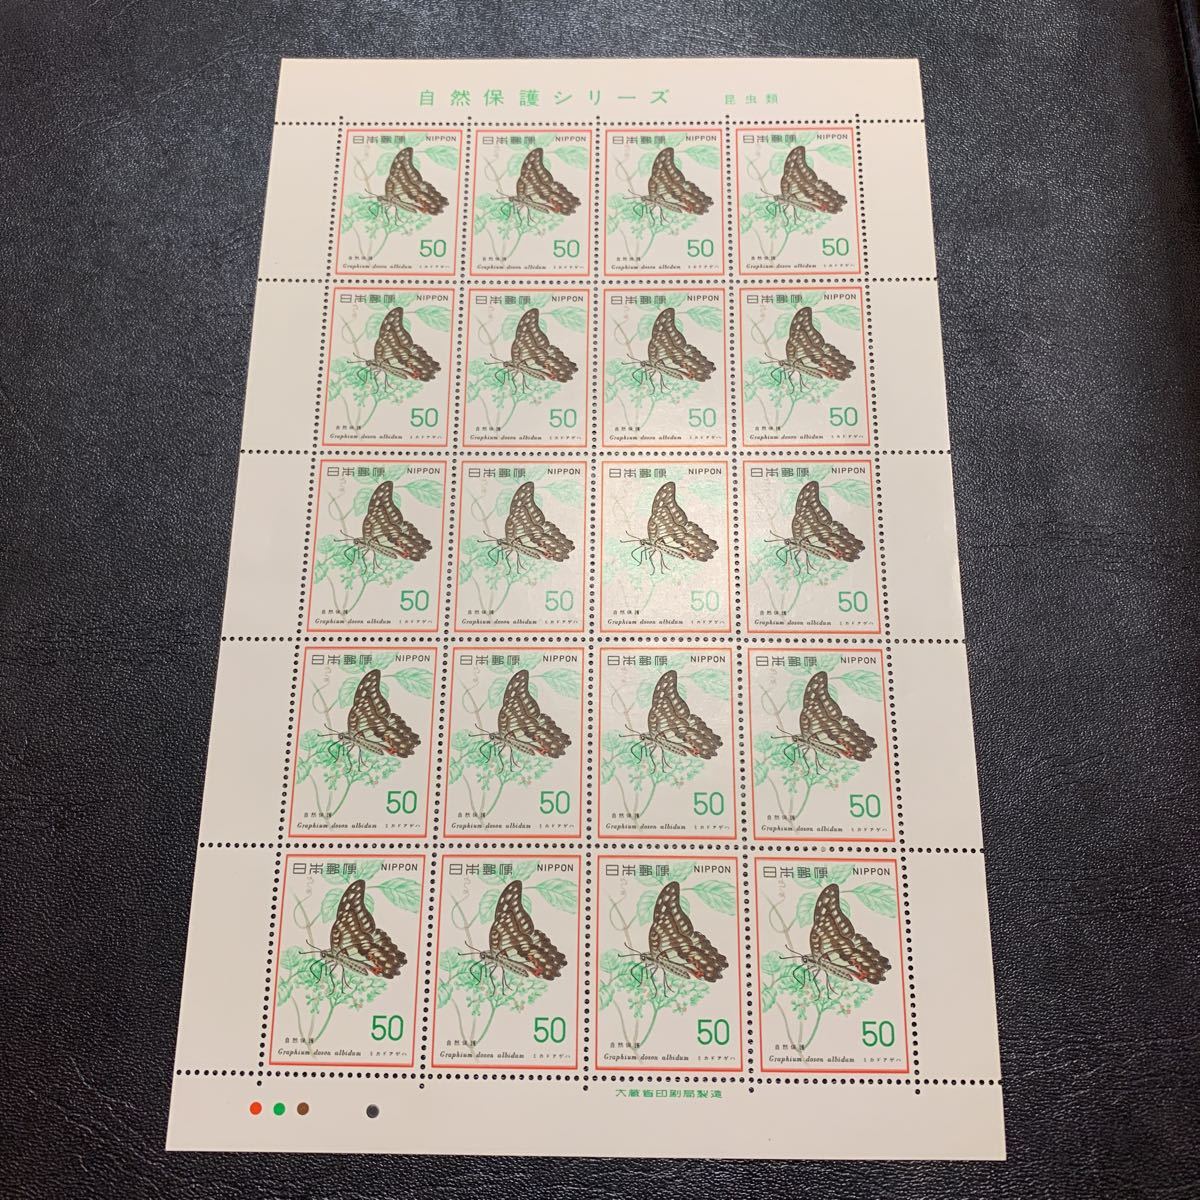 1977年 自然保護シリーズ 第4集 ミカドアゲハ 50円×20面 1シート 昆虫類 記念切手 未使用の画像1